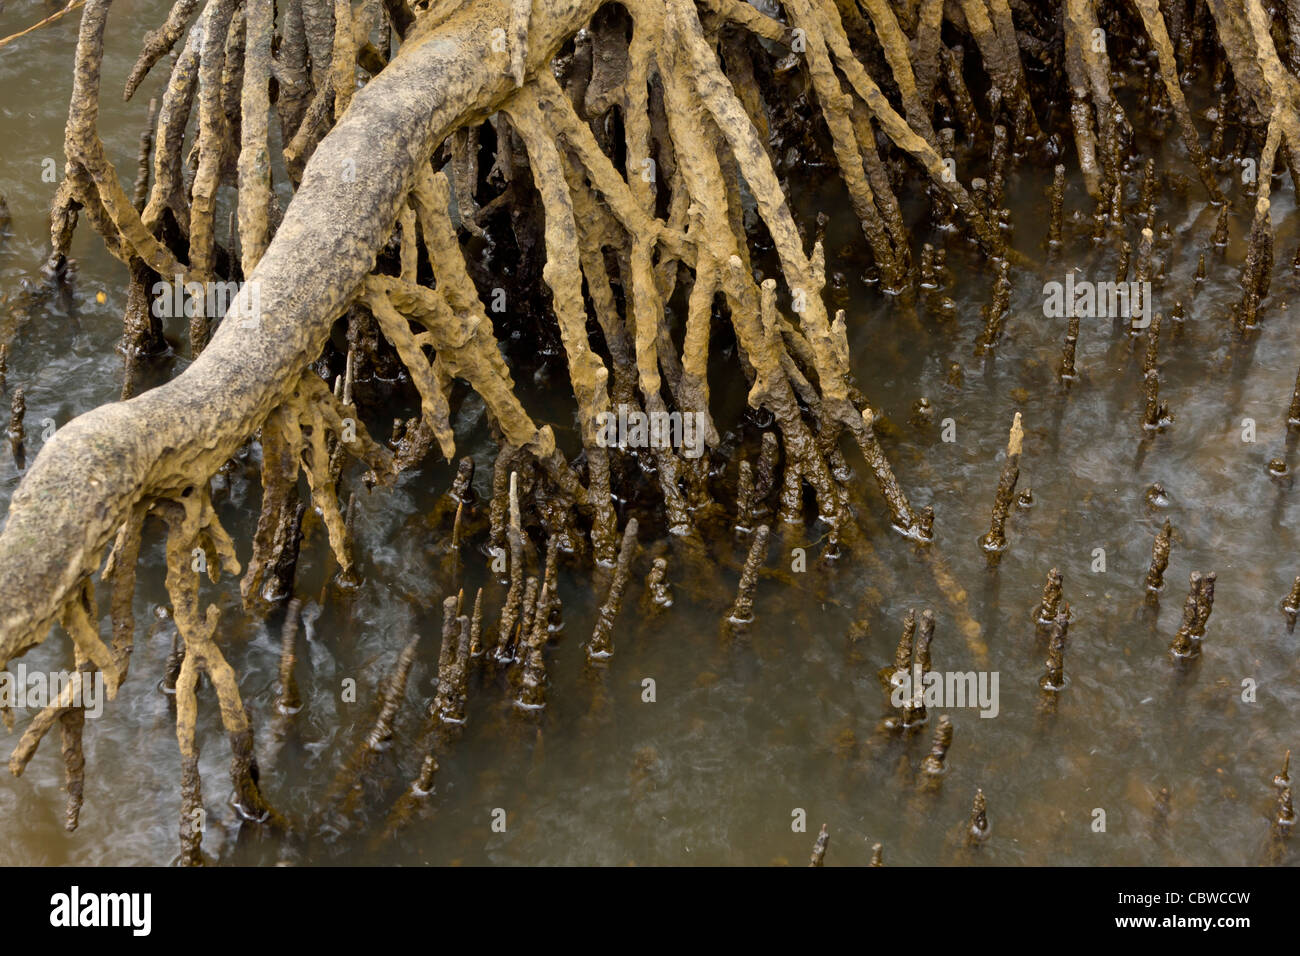 Mangrovewurzeln entwickeln stachelige Luftwurzeln, die helfen, es in den sumpfigen Bedingungen atmen. Stockfoto